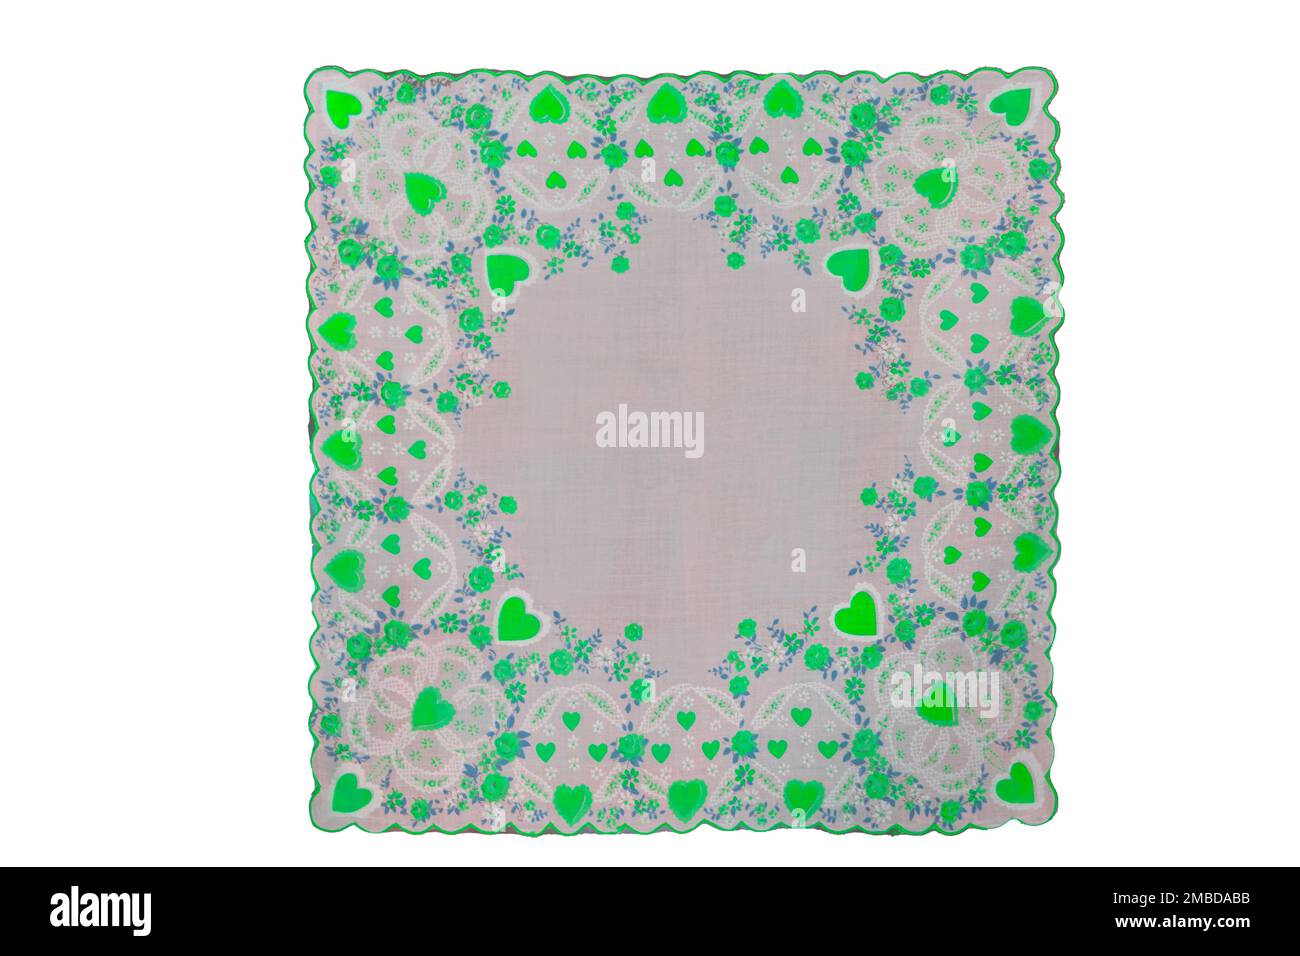 Isoliertes quadratisches, grünes Taschentuch im Vintage-Stil für St. Patricks Day, März oder Frühling. Herzen und Blumen bilden einen Muschelrand. Stockfoto